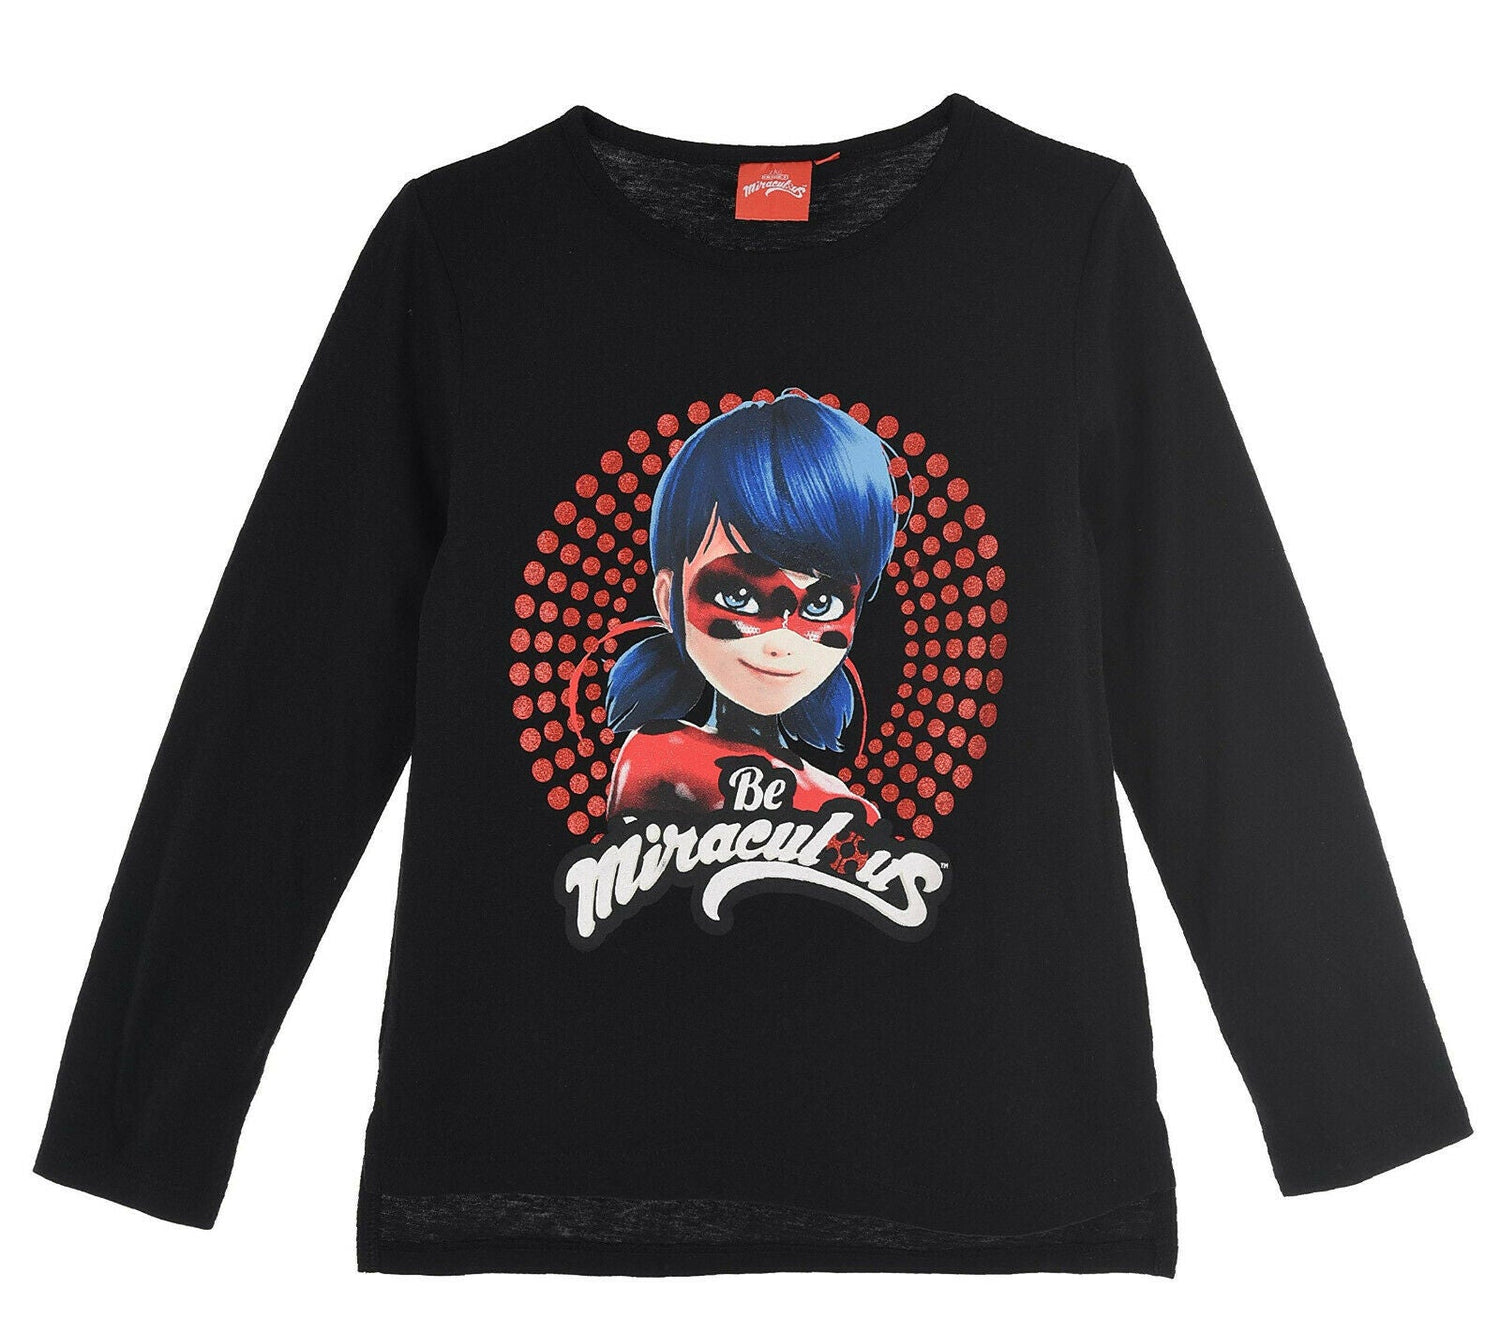 Miraculous Ladybug & Cat Noir, Black Long Sleeve T-Shirts, Ages 4, 5, 6, 8, 100% Cotton, Official Merchandise